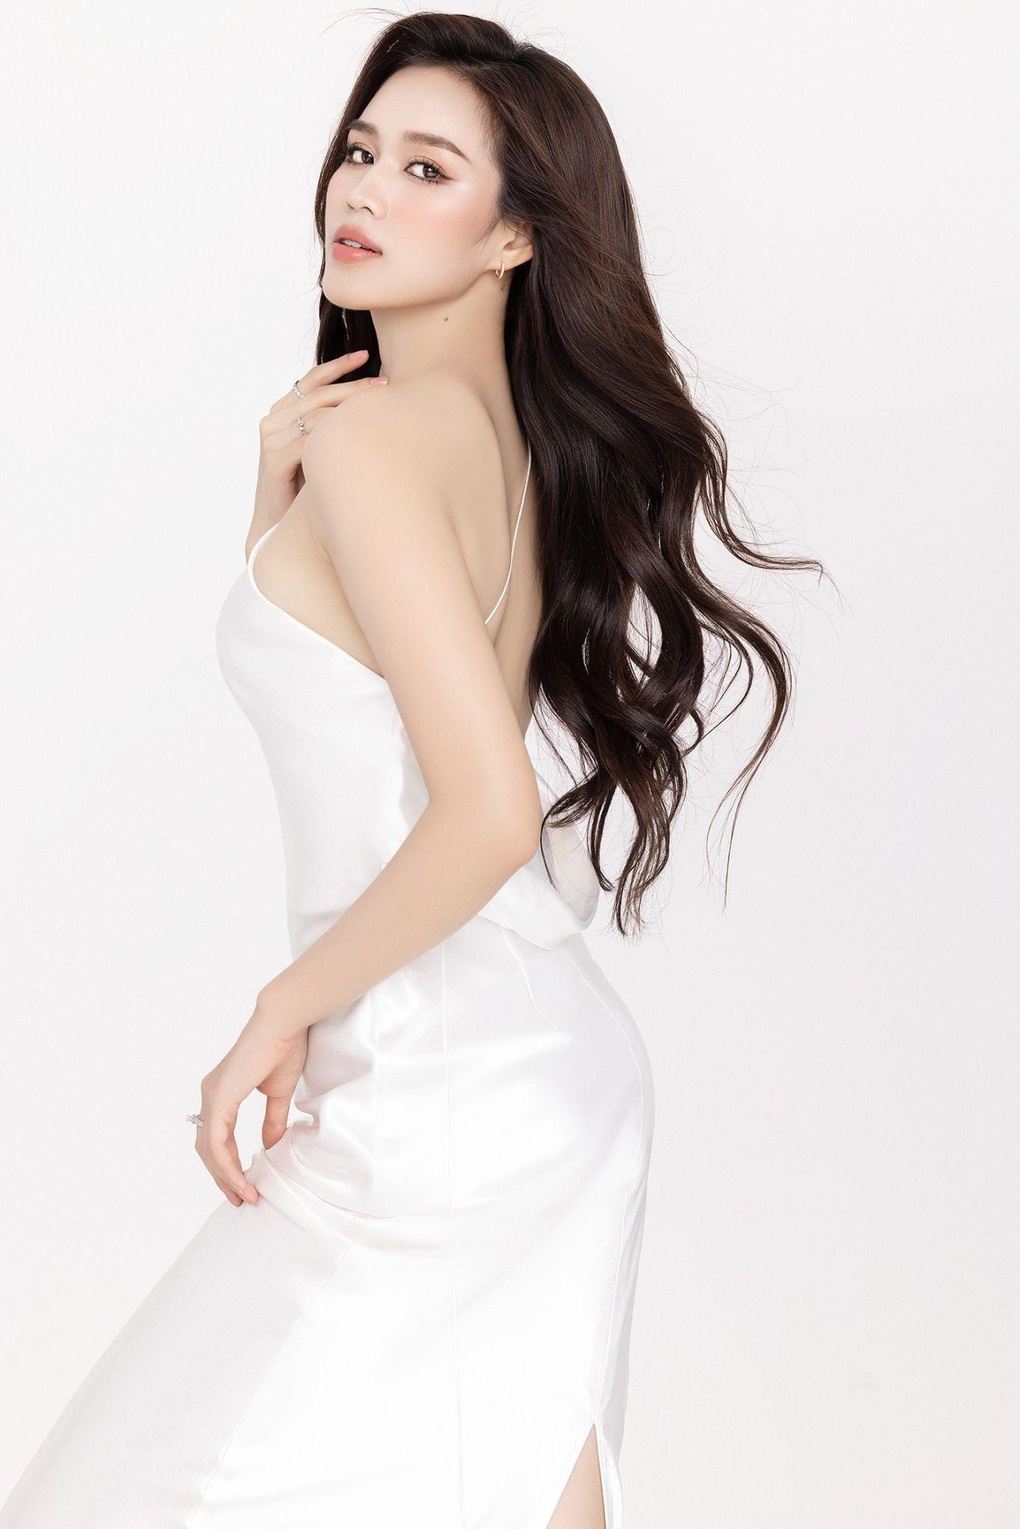 Hoa hậu Đỗ Thị Hà: Nếu ai đó yêu tôi thật lòng, họ sẽ không bị áp lực-5